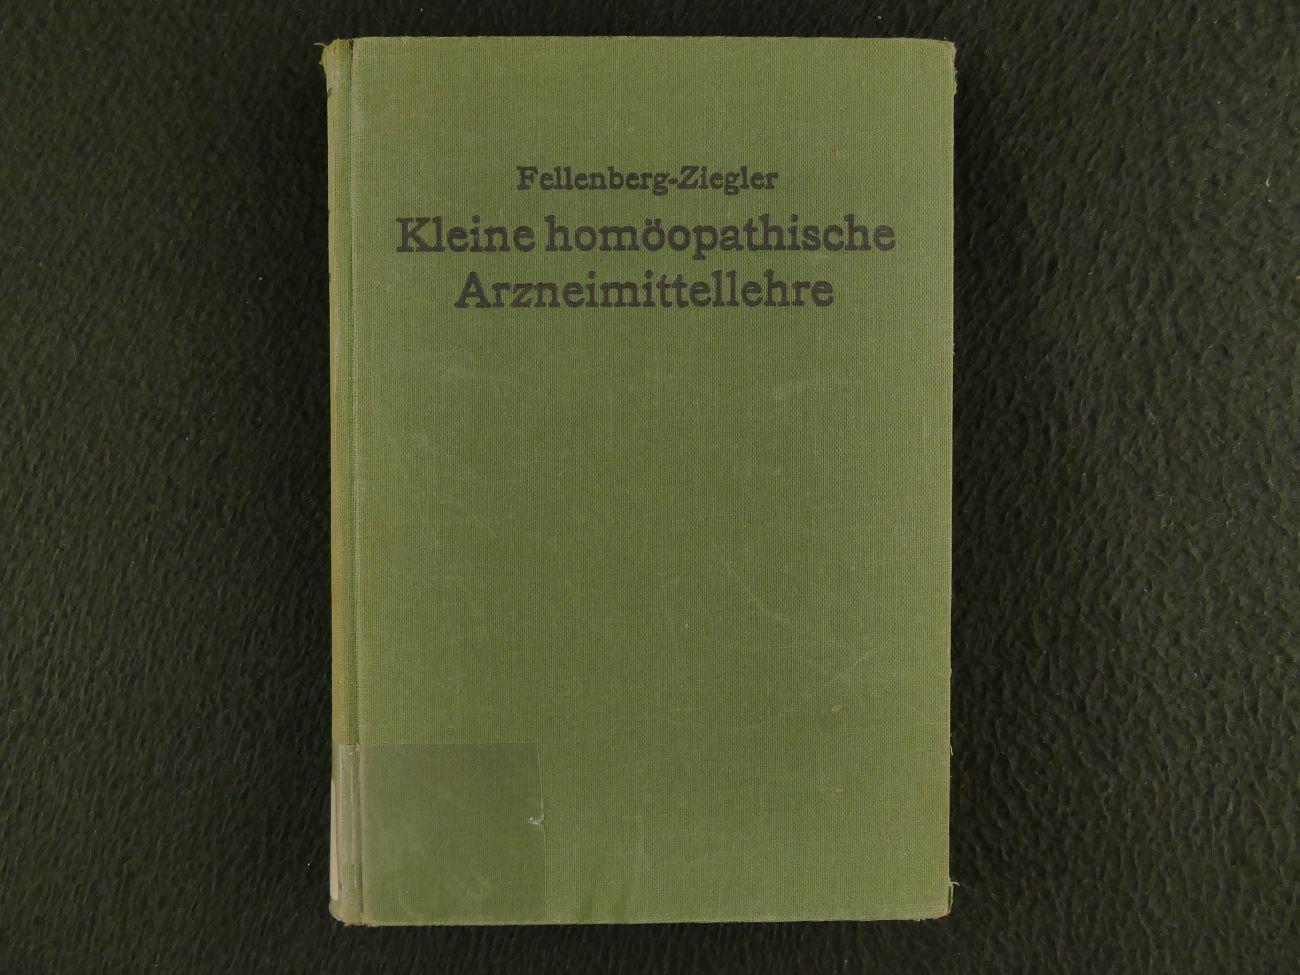 Fellenberg - Ziegler, A. v. - Kleine homöopathische Arzneimittellehre